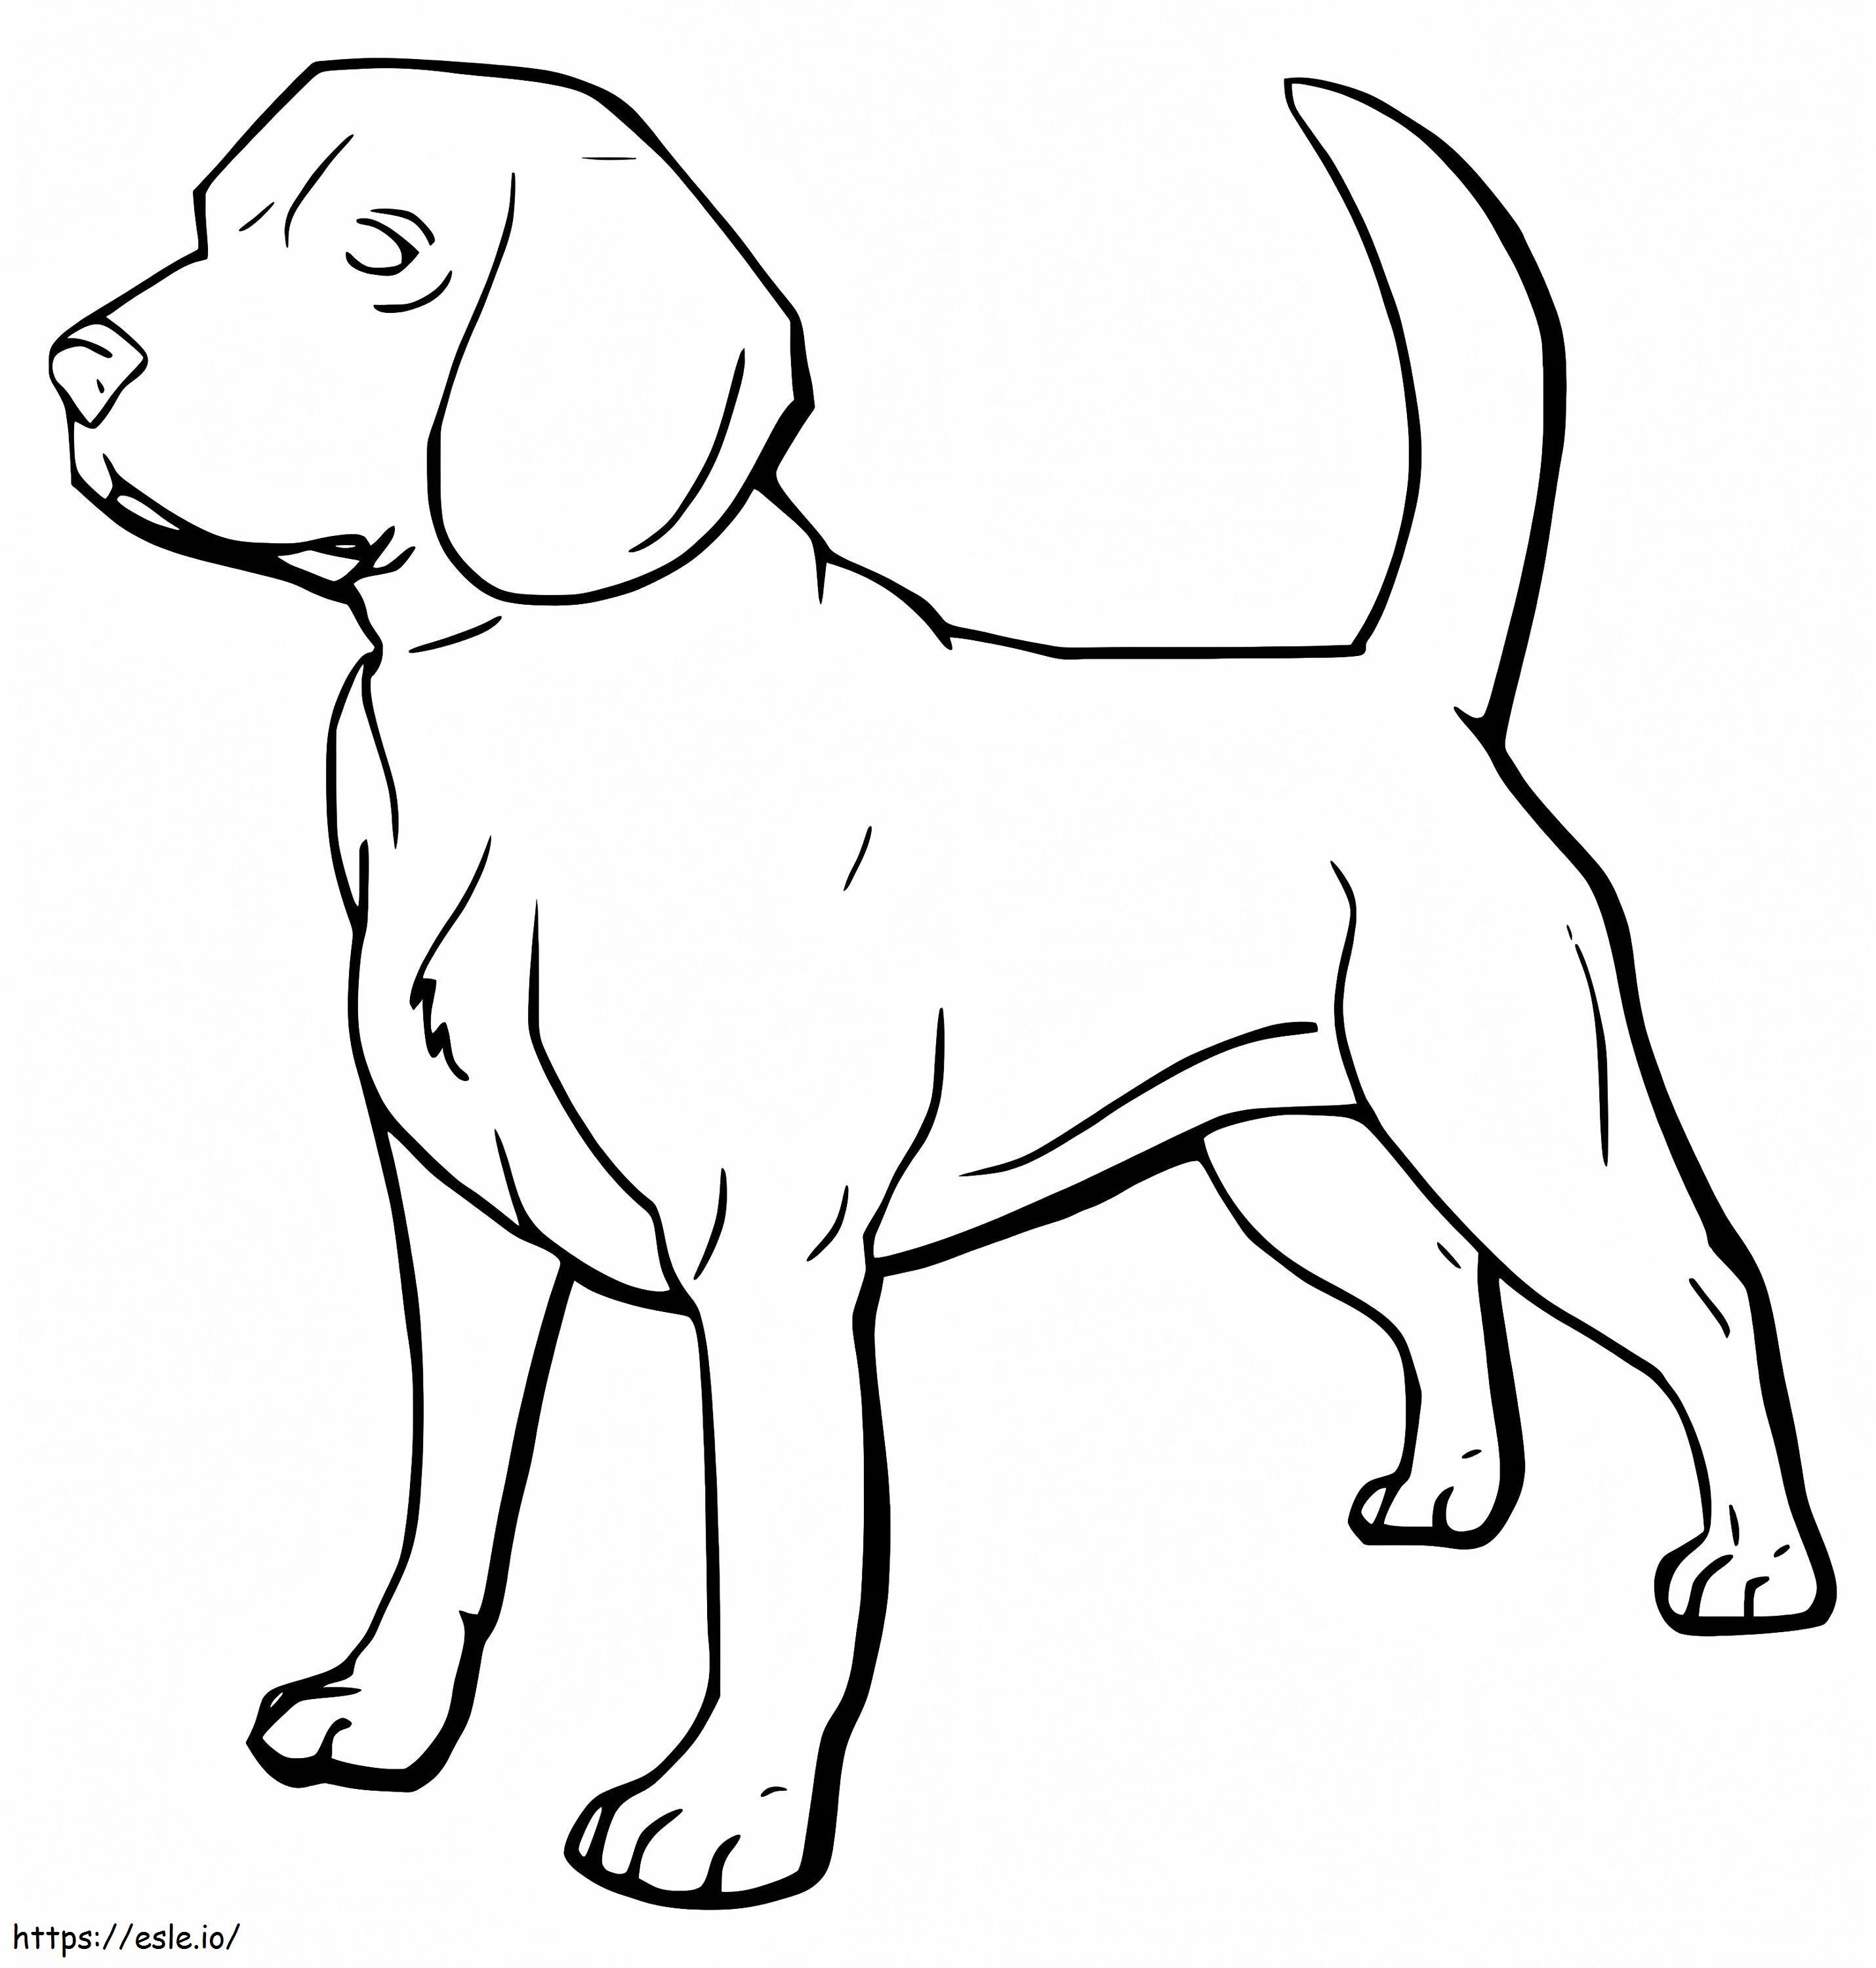 Ücretsiz Yazdırılabilir Beagle Köpek boyama